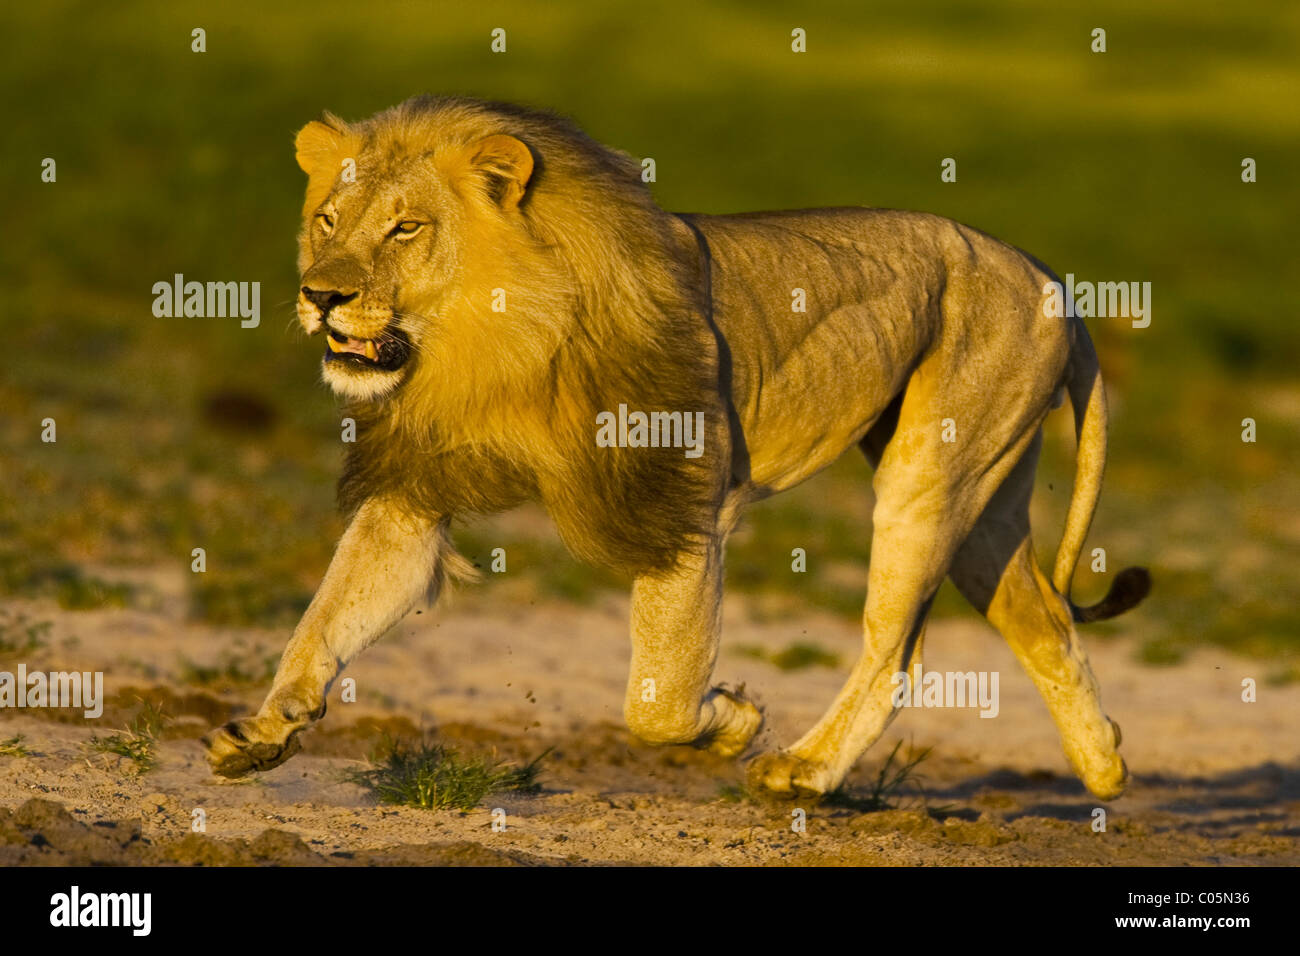 African lion running, Etosha National Park, Namibia Stock Photo